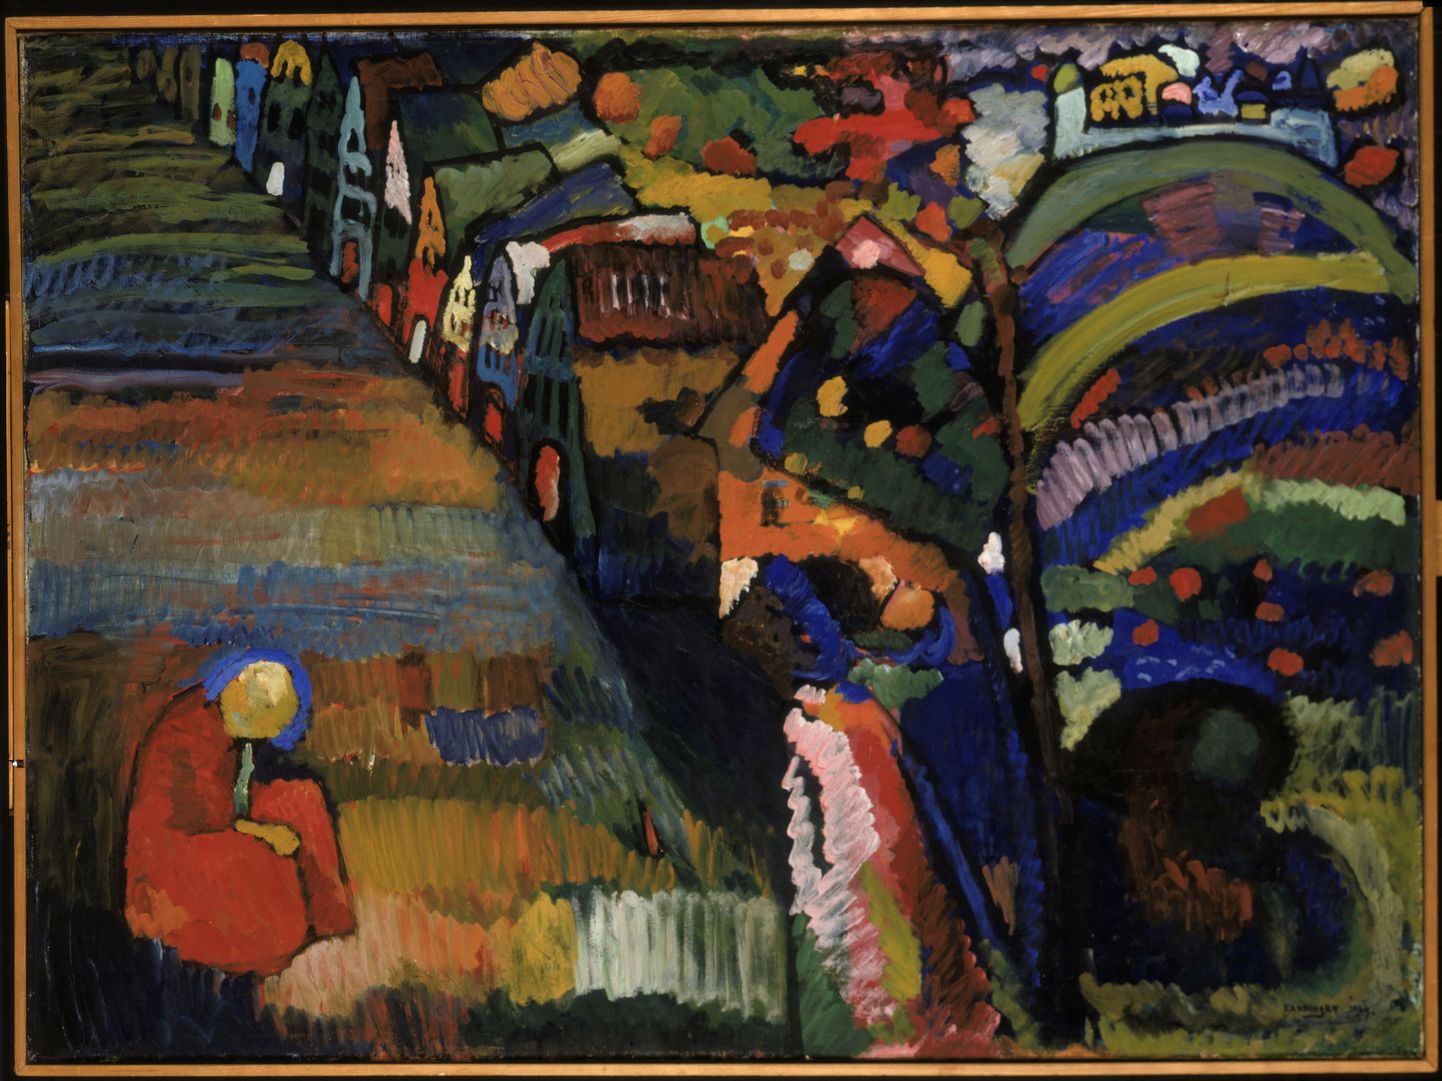 Amsterdamis Stedelijki muuseumis asuv Vassili Kandinsky maal